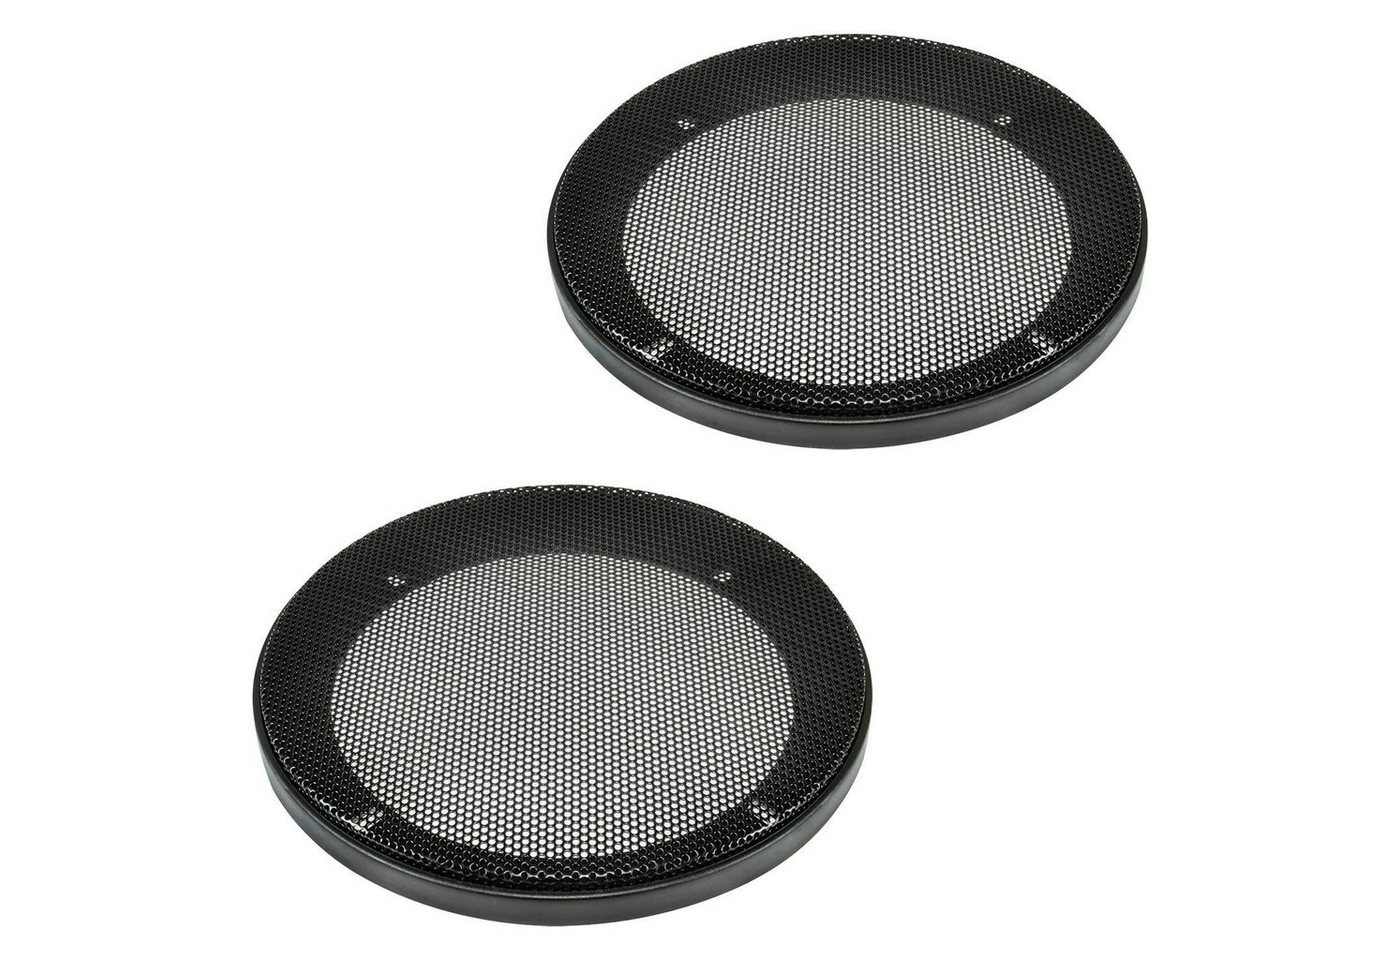 tomzz Audio Lautsprecher Gitter Grill für 130mm DIN Lautsprecher schwarz 2-teilig Auto-Lautsprecher von Tomzz Audio